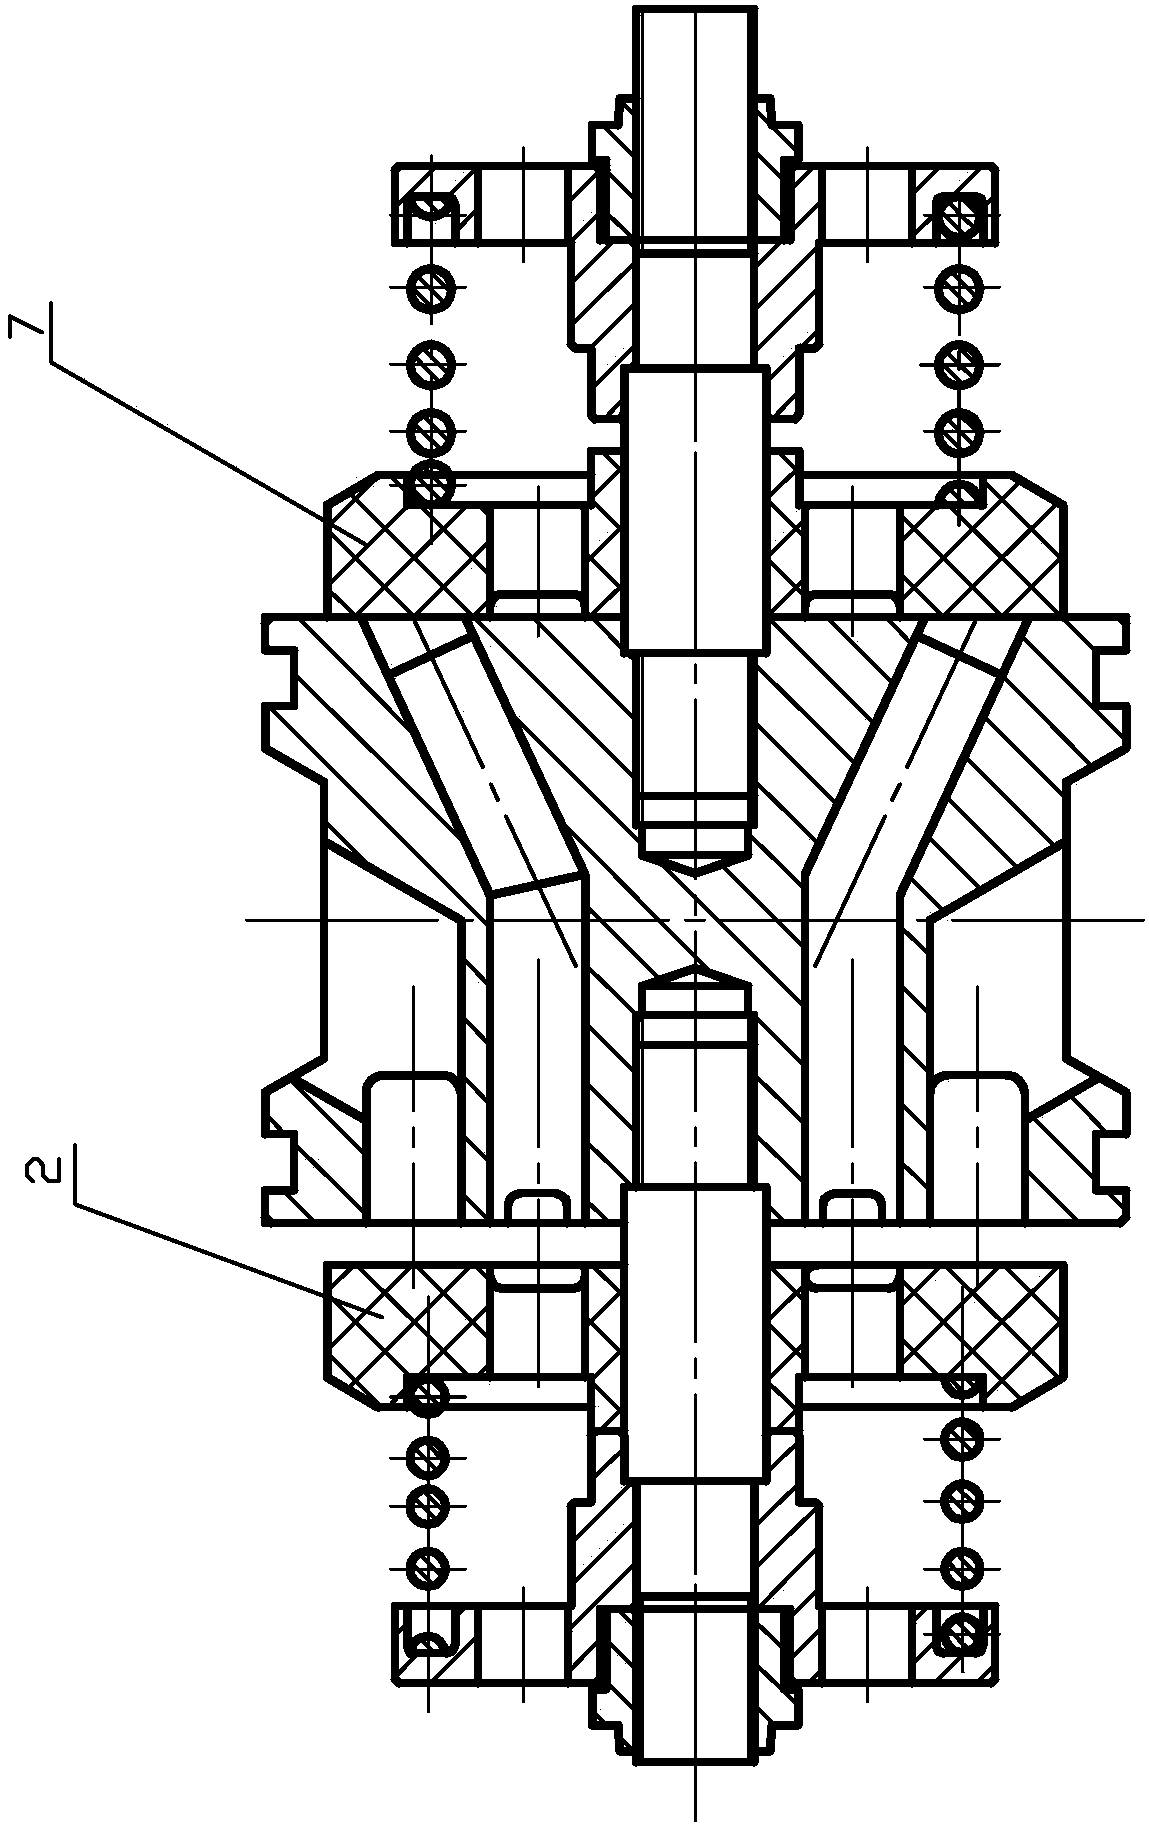 A plunger pump valve group